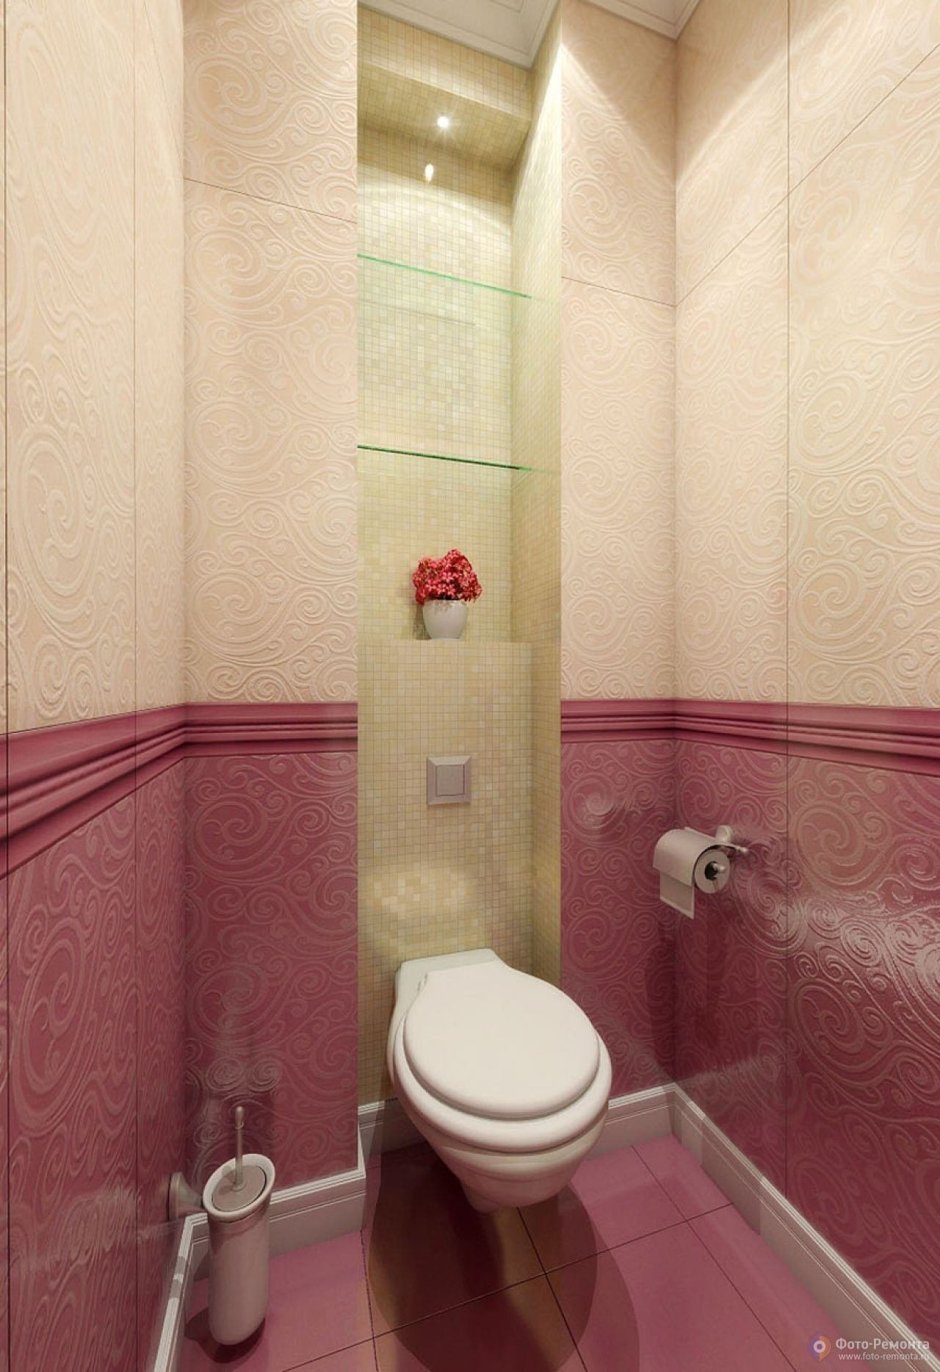 Розовая плитка в туалете